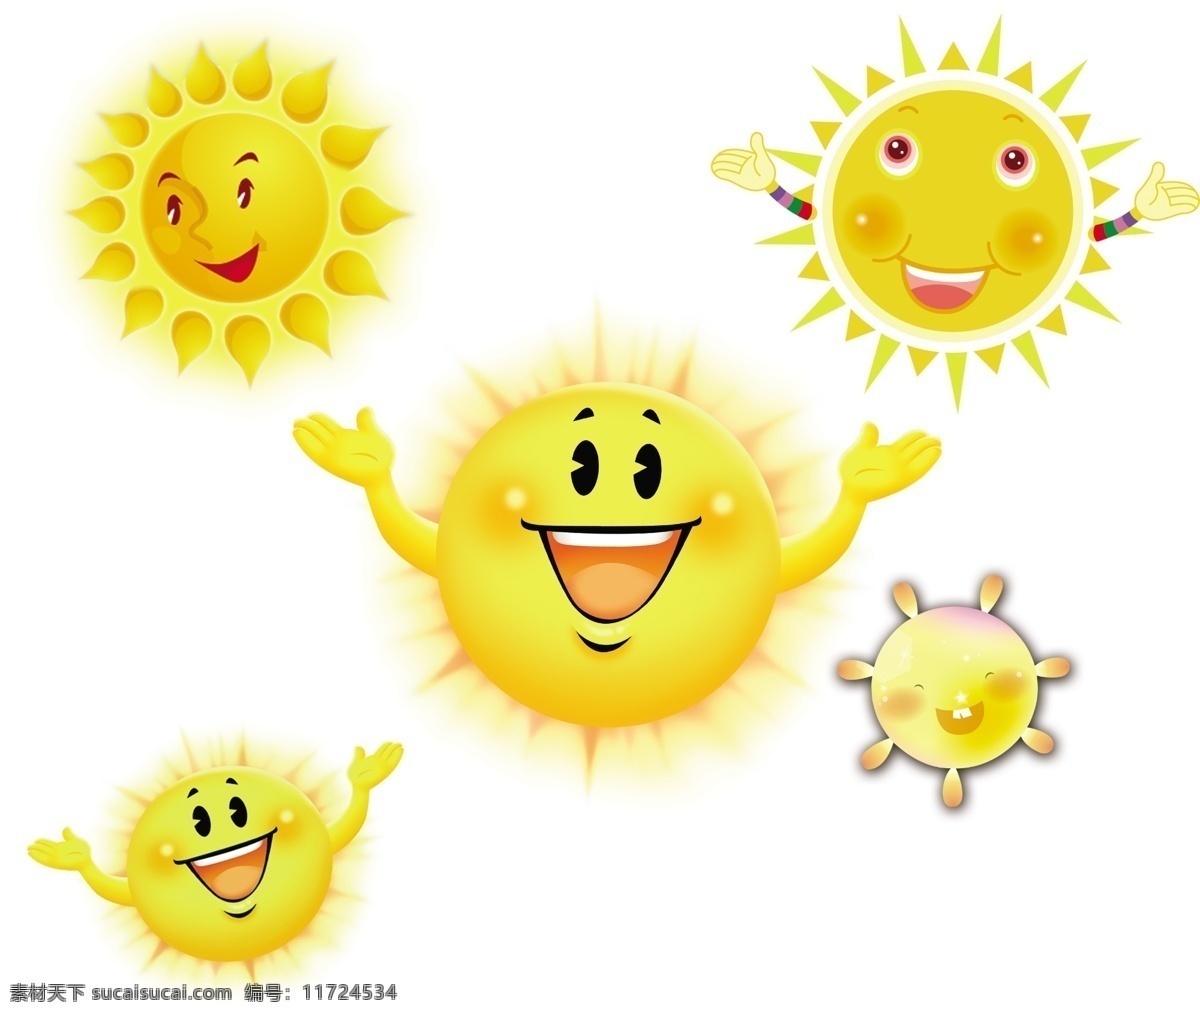 卡通太阳素材 卡通 太阳 卡通太阳 黄色太阳 可爱 眼睛 开心 笑 卡通太阳集 卡通太阳大全 分层